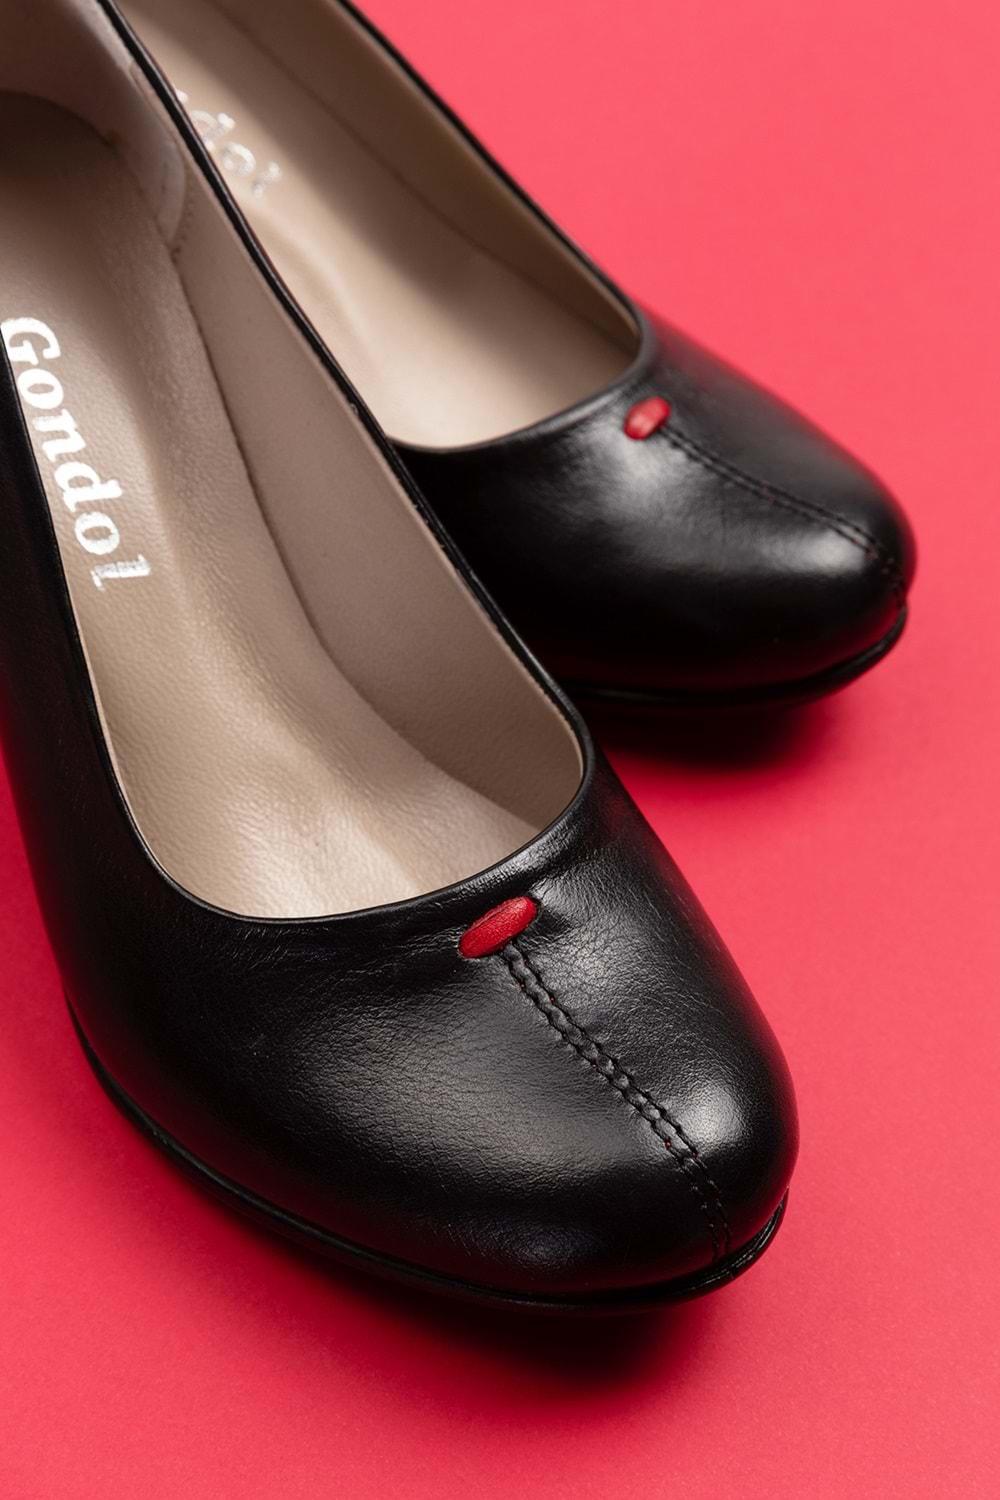 Gondol Kadın Hakiki Deri Klasik Topuklu Ayakkabı vdt.660 - Siyah - 40